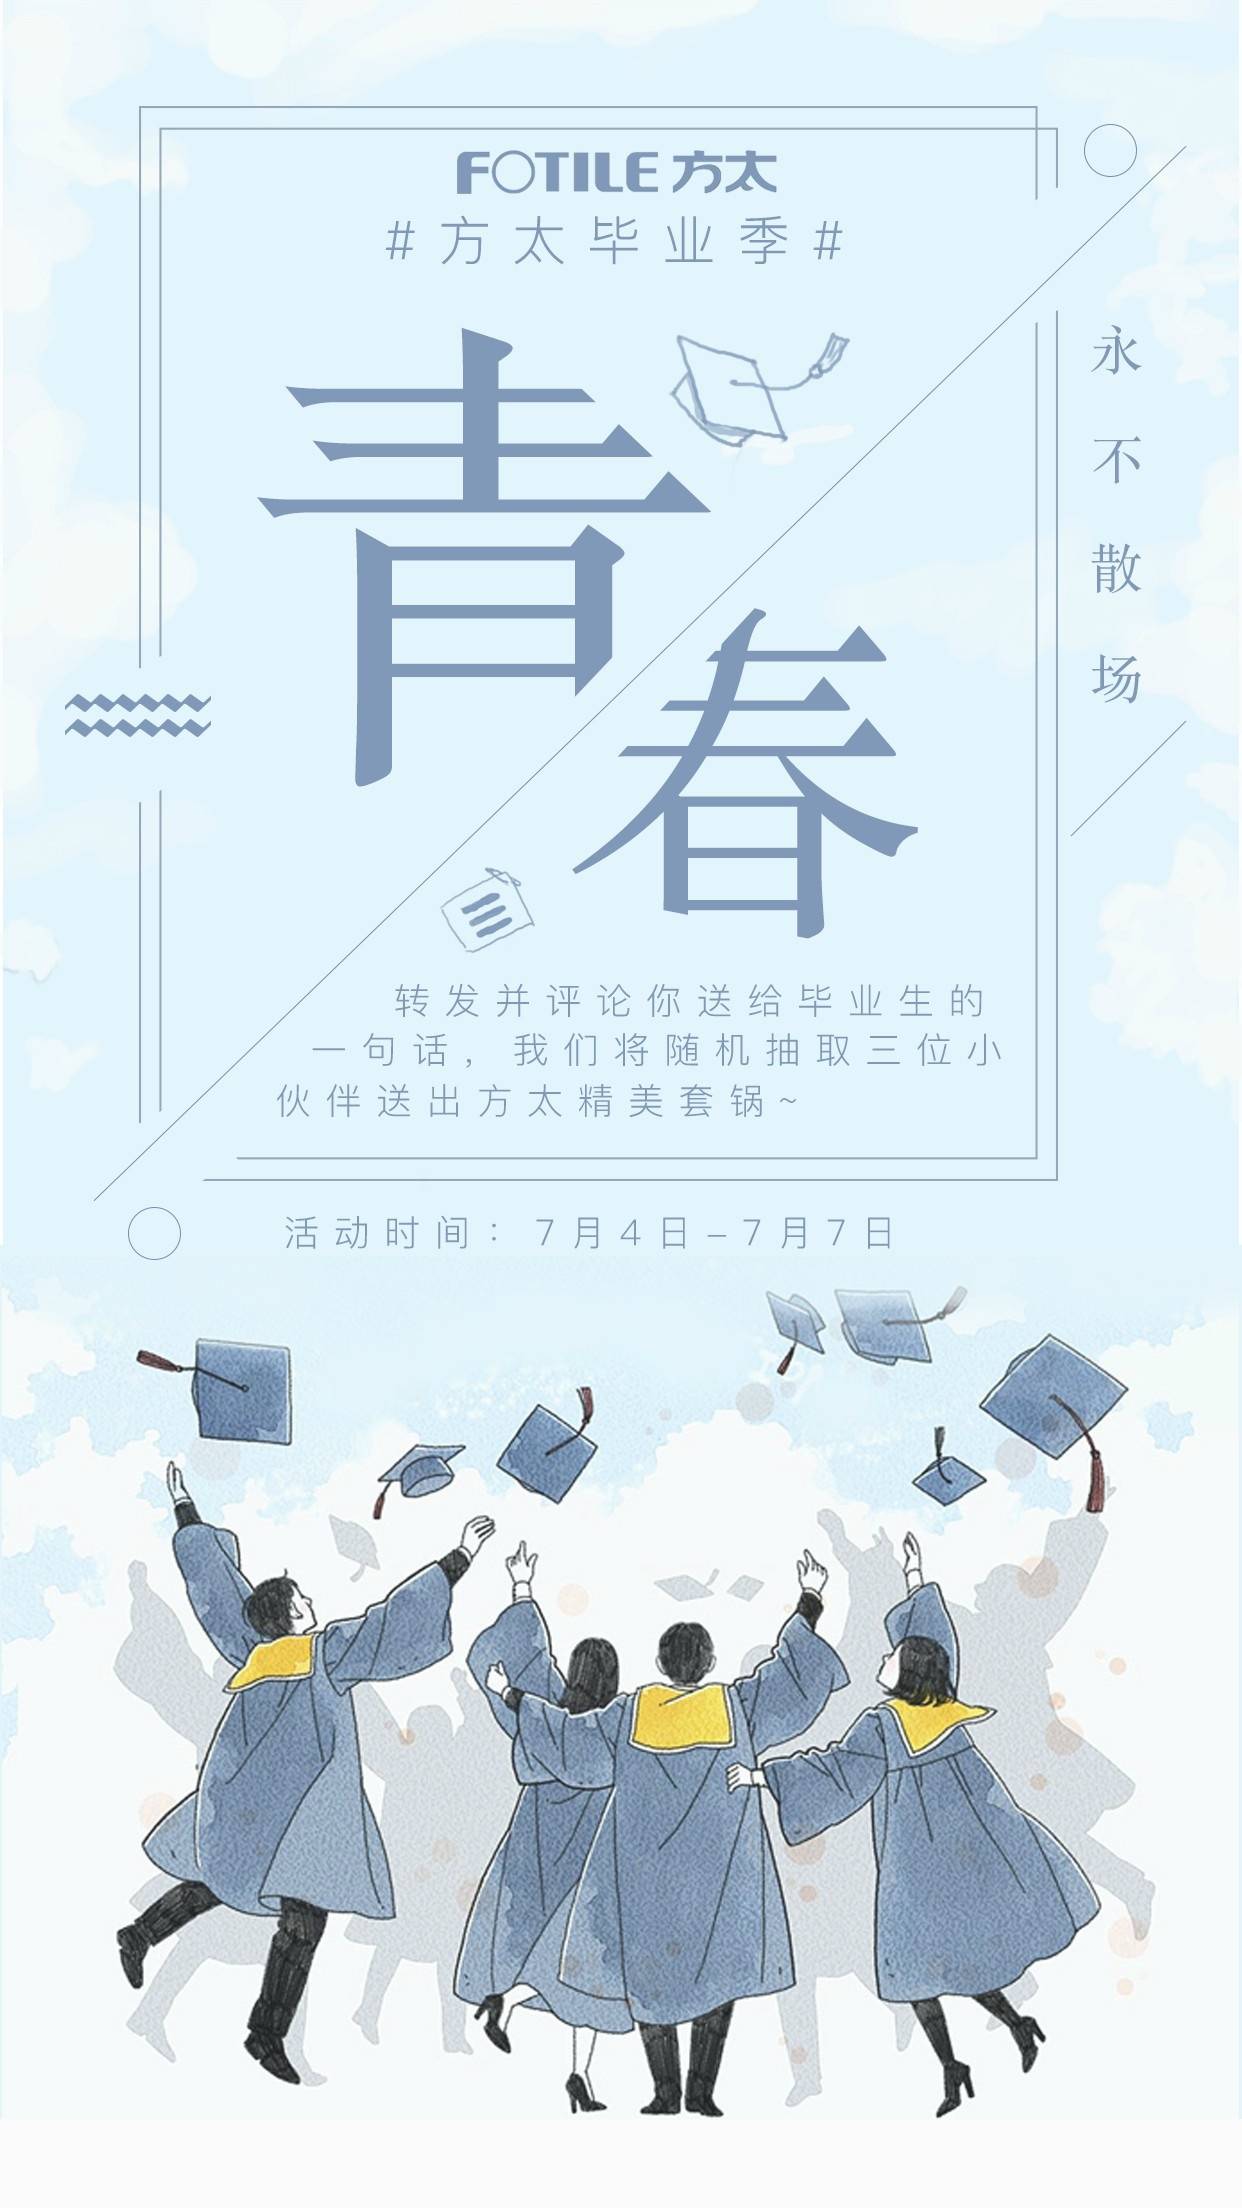 方太官方微博的海报,已发布.主题:方太毕业季,青春